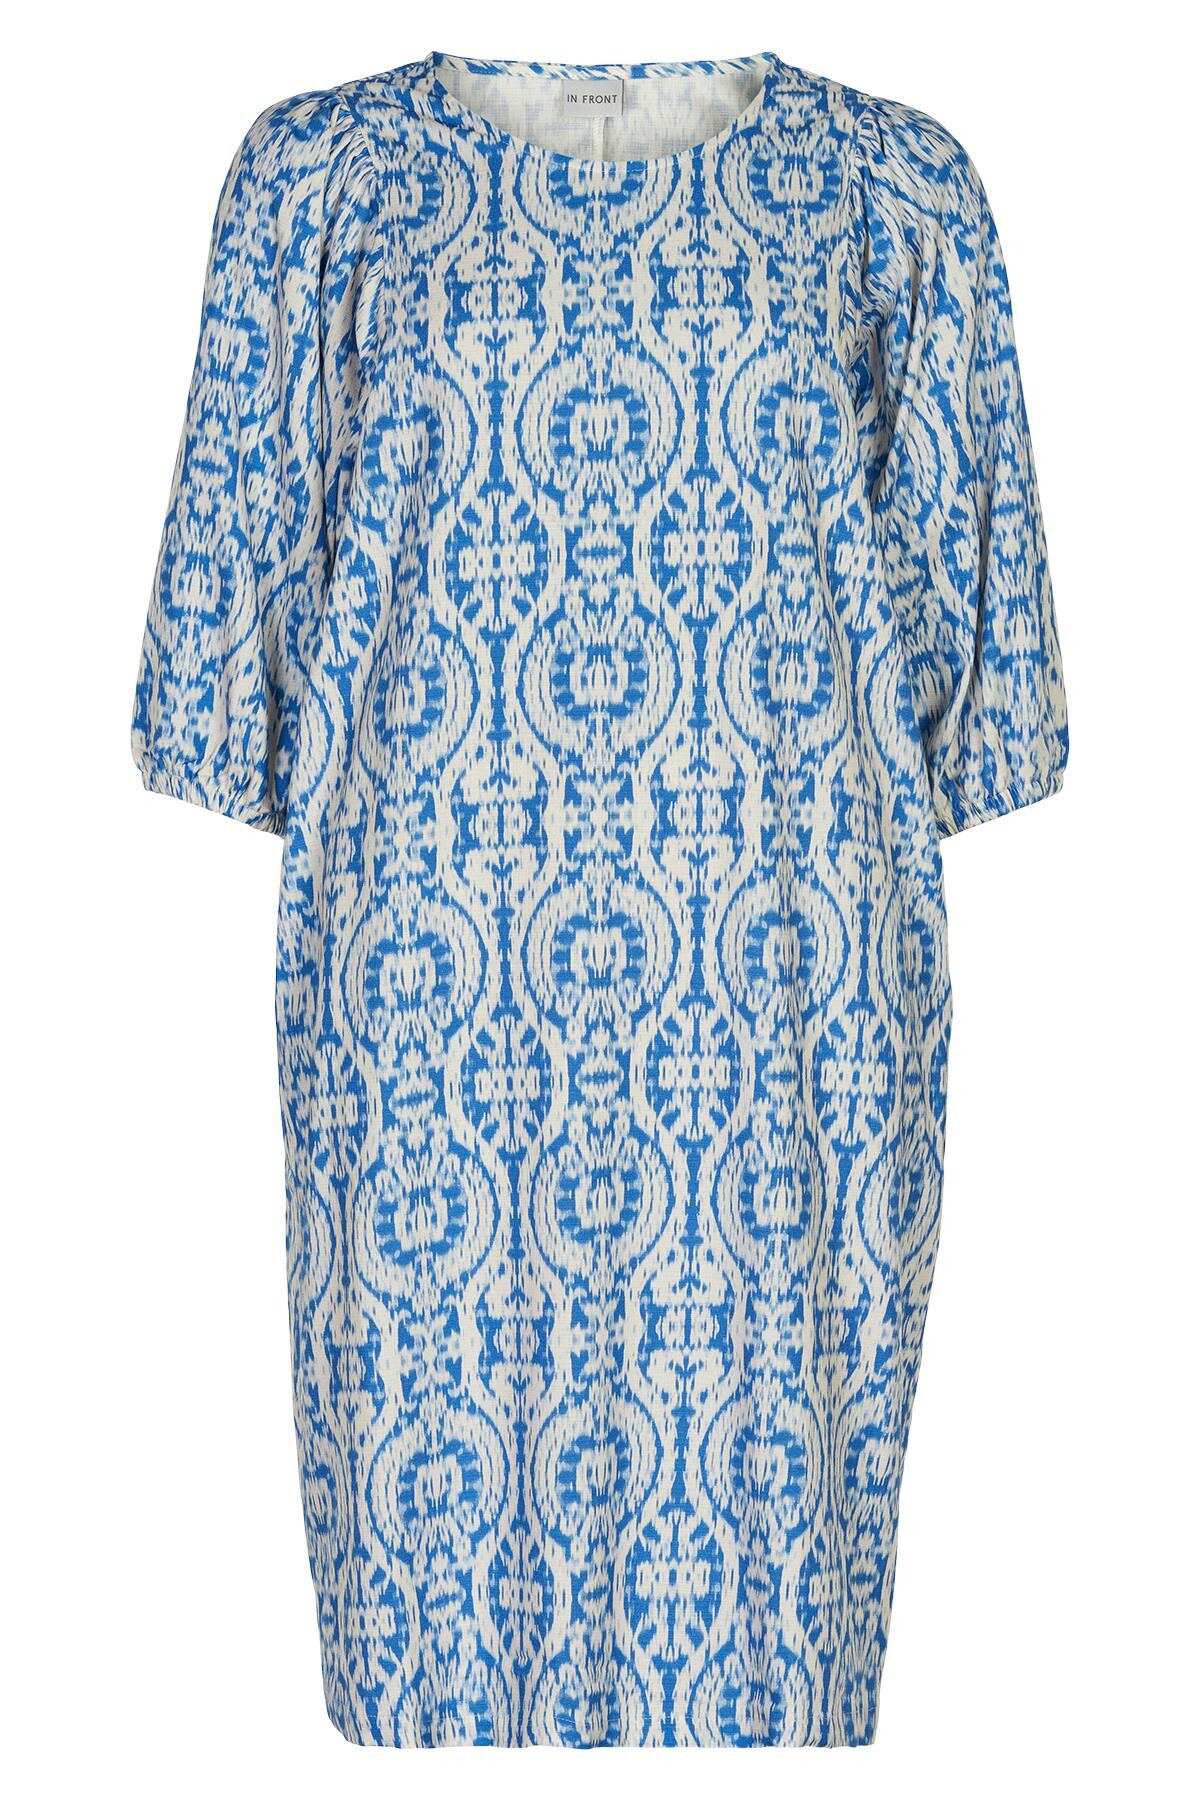 Billede af IN FRONT GEORGIE DRESS 14962 501 (Blue 501, S)